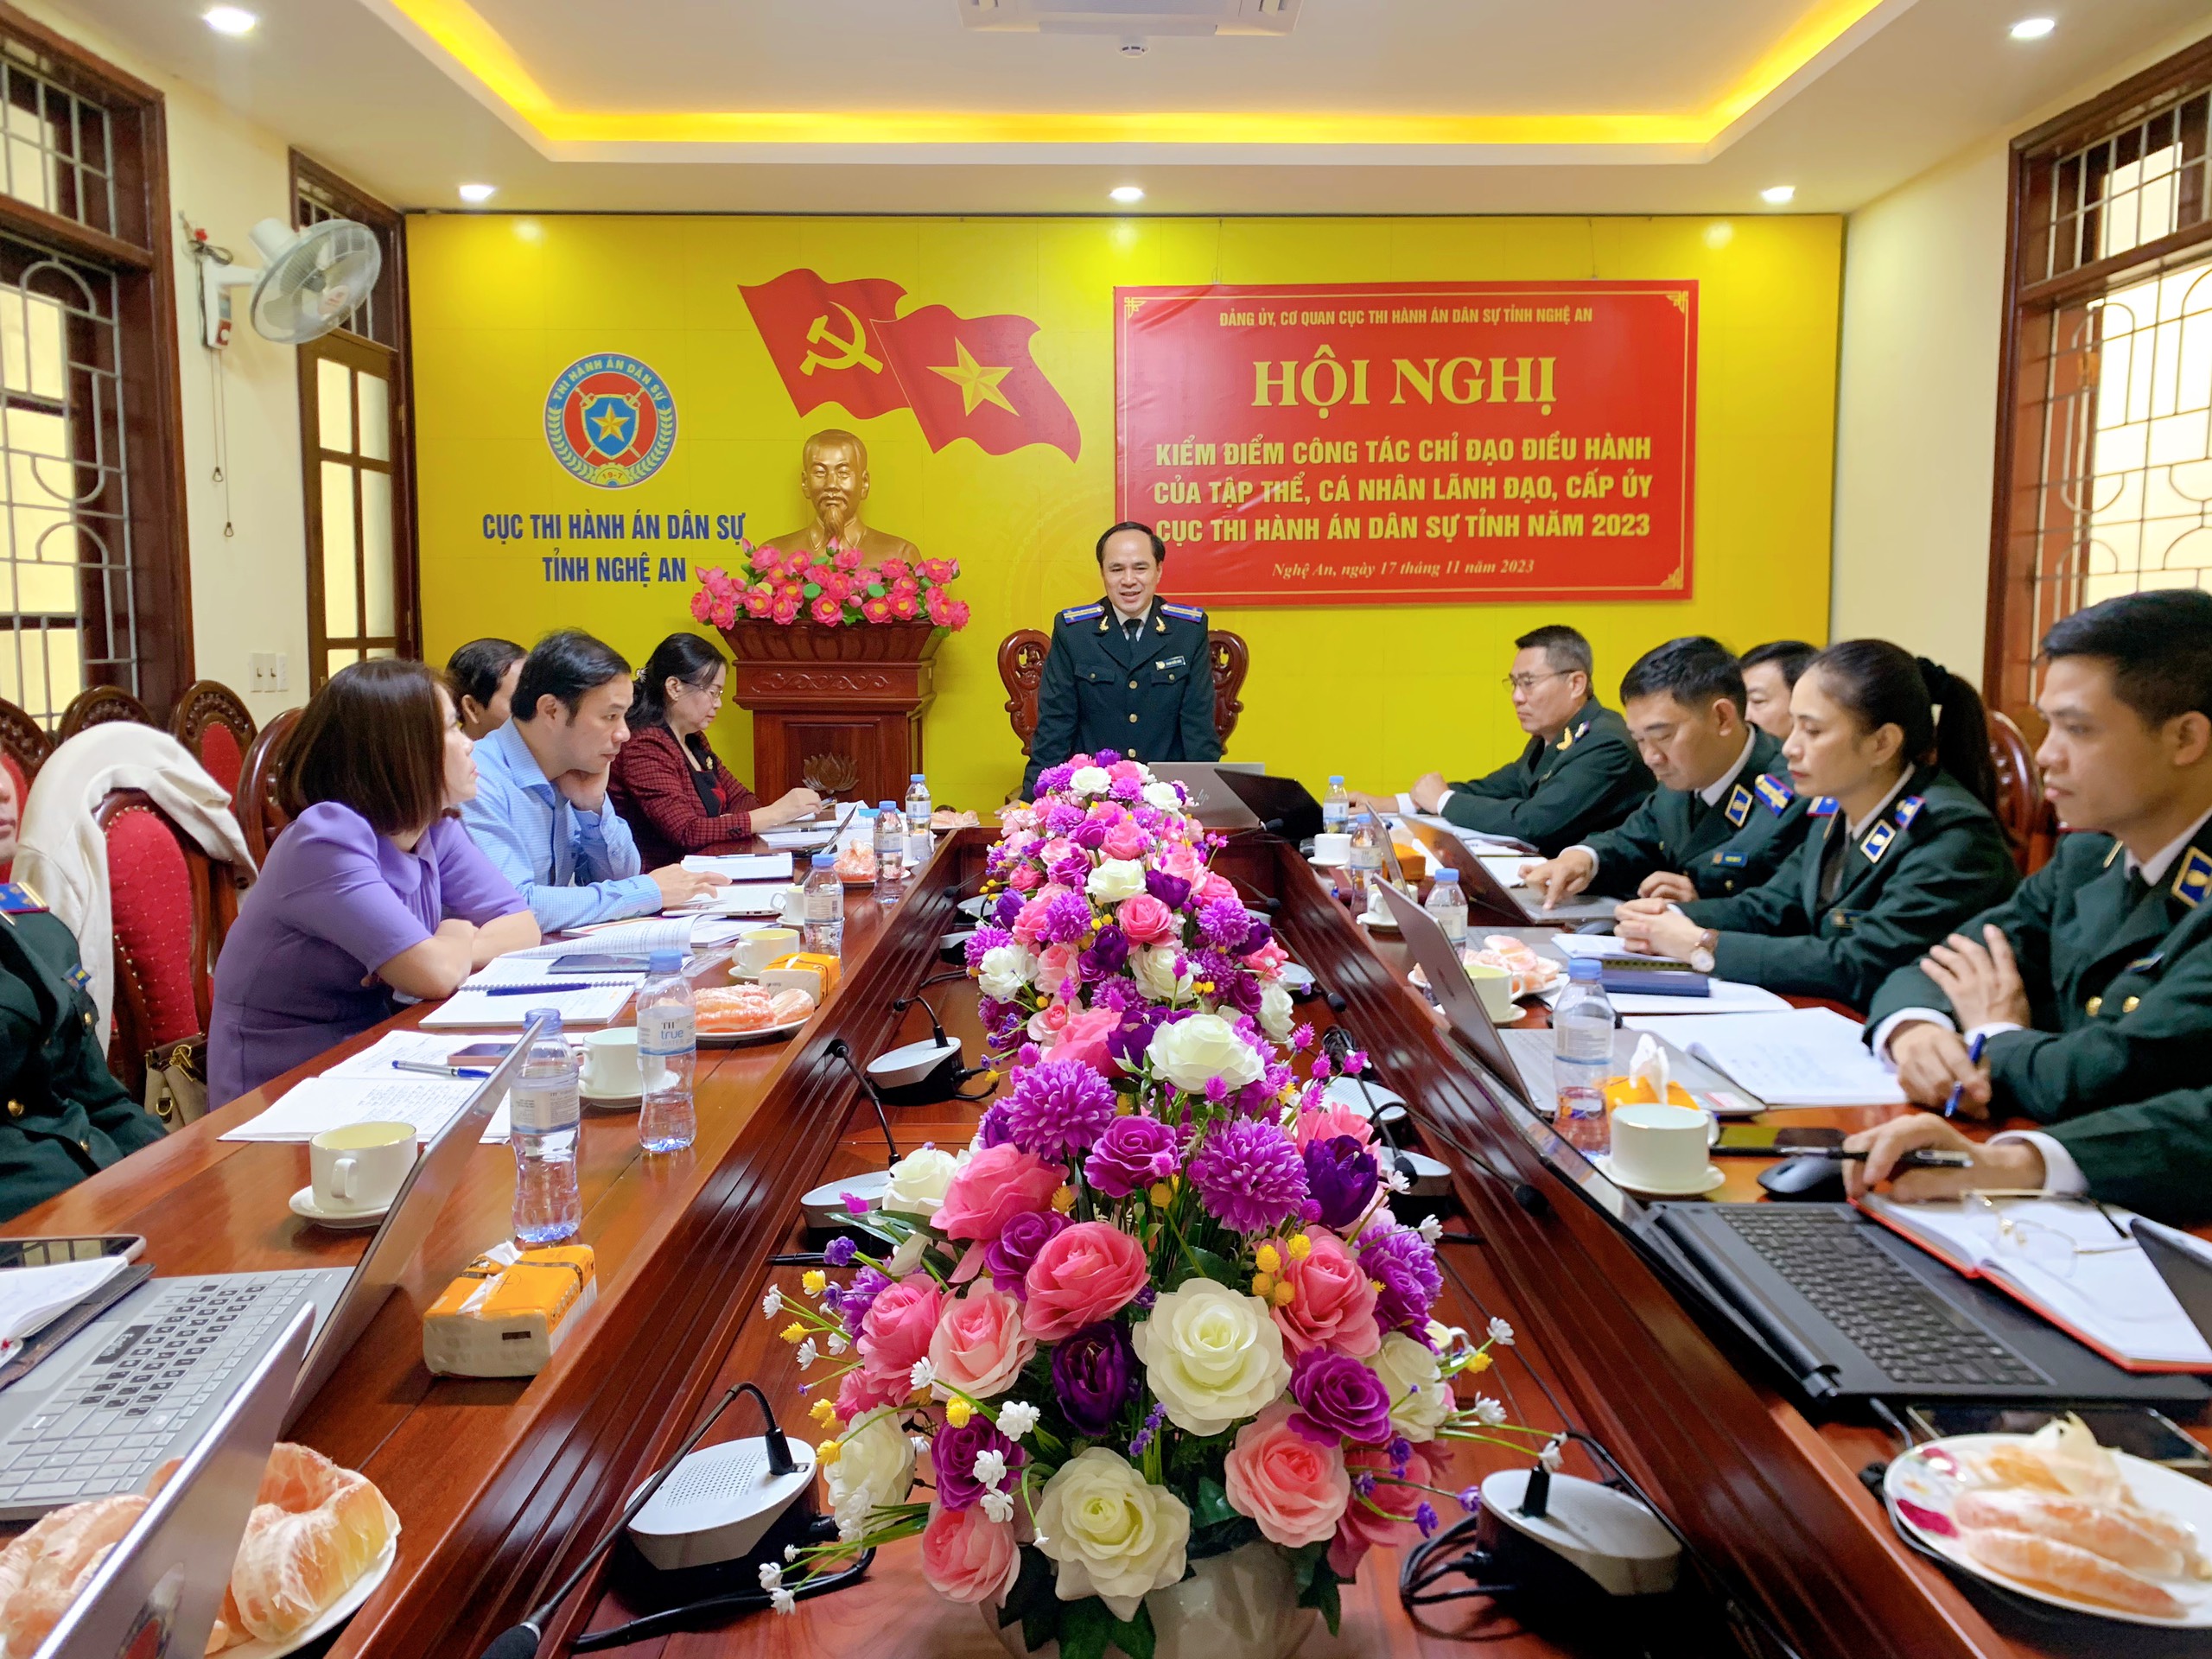 Đảng ủy, Cơ quan Cục Thi hành án dân sự tỉnh Nghệ An tổ chức Hội nghị kiểm điểm công tác chỉ đạo điều hành của tập thể, cá nhân lãnh đạo, cấp ủy Cục Thi hành án dân sự tỉnh Nghệ An